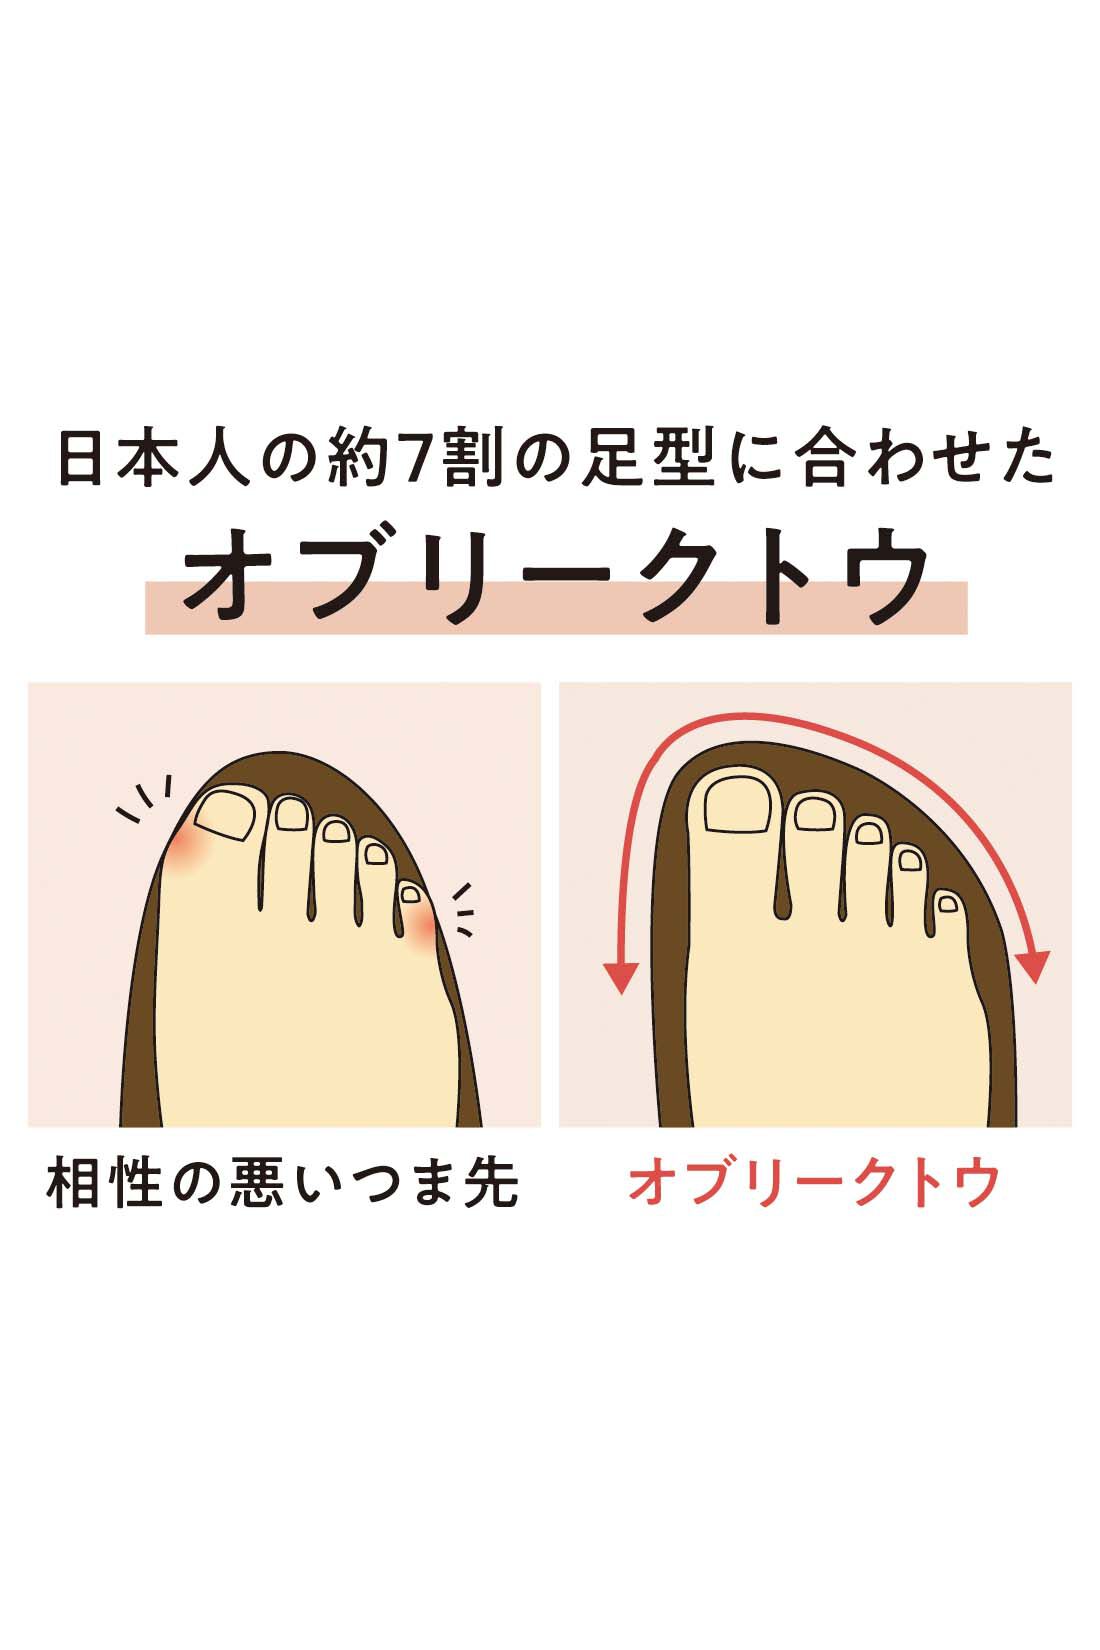 Live in  comfort|リブ イン コンフォート　オブリークトウで足まわりゆったり 大人Tストラップシューズ〈アイボリー〉|つま先幅広でゆったり。日本人に多い、親指がいちばん長い“エジプト足”に自然に沿うように設計した形です。